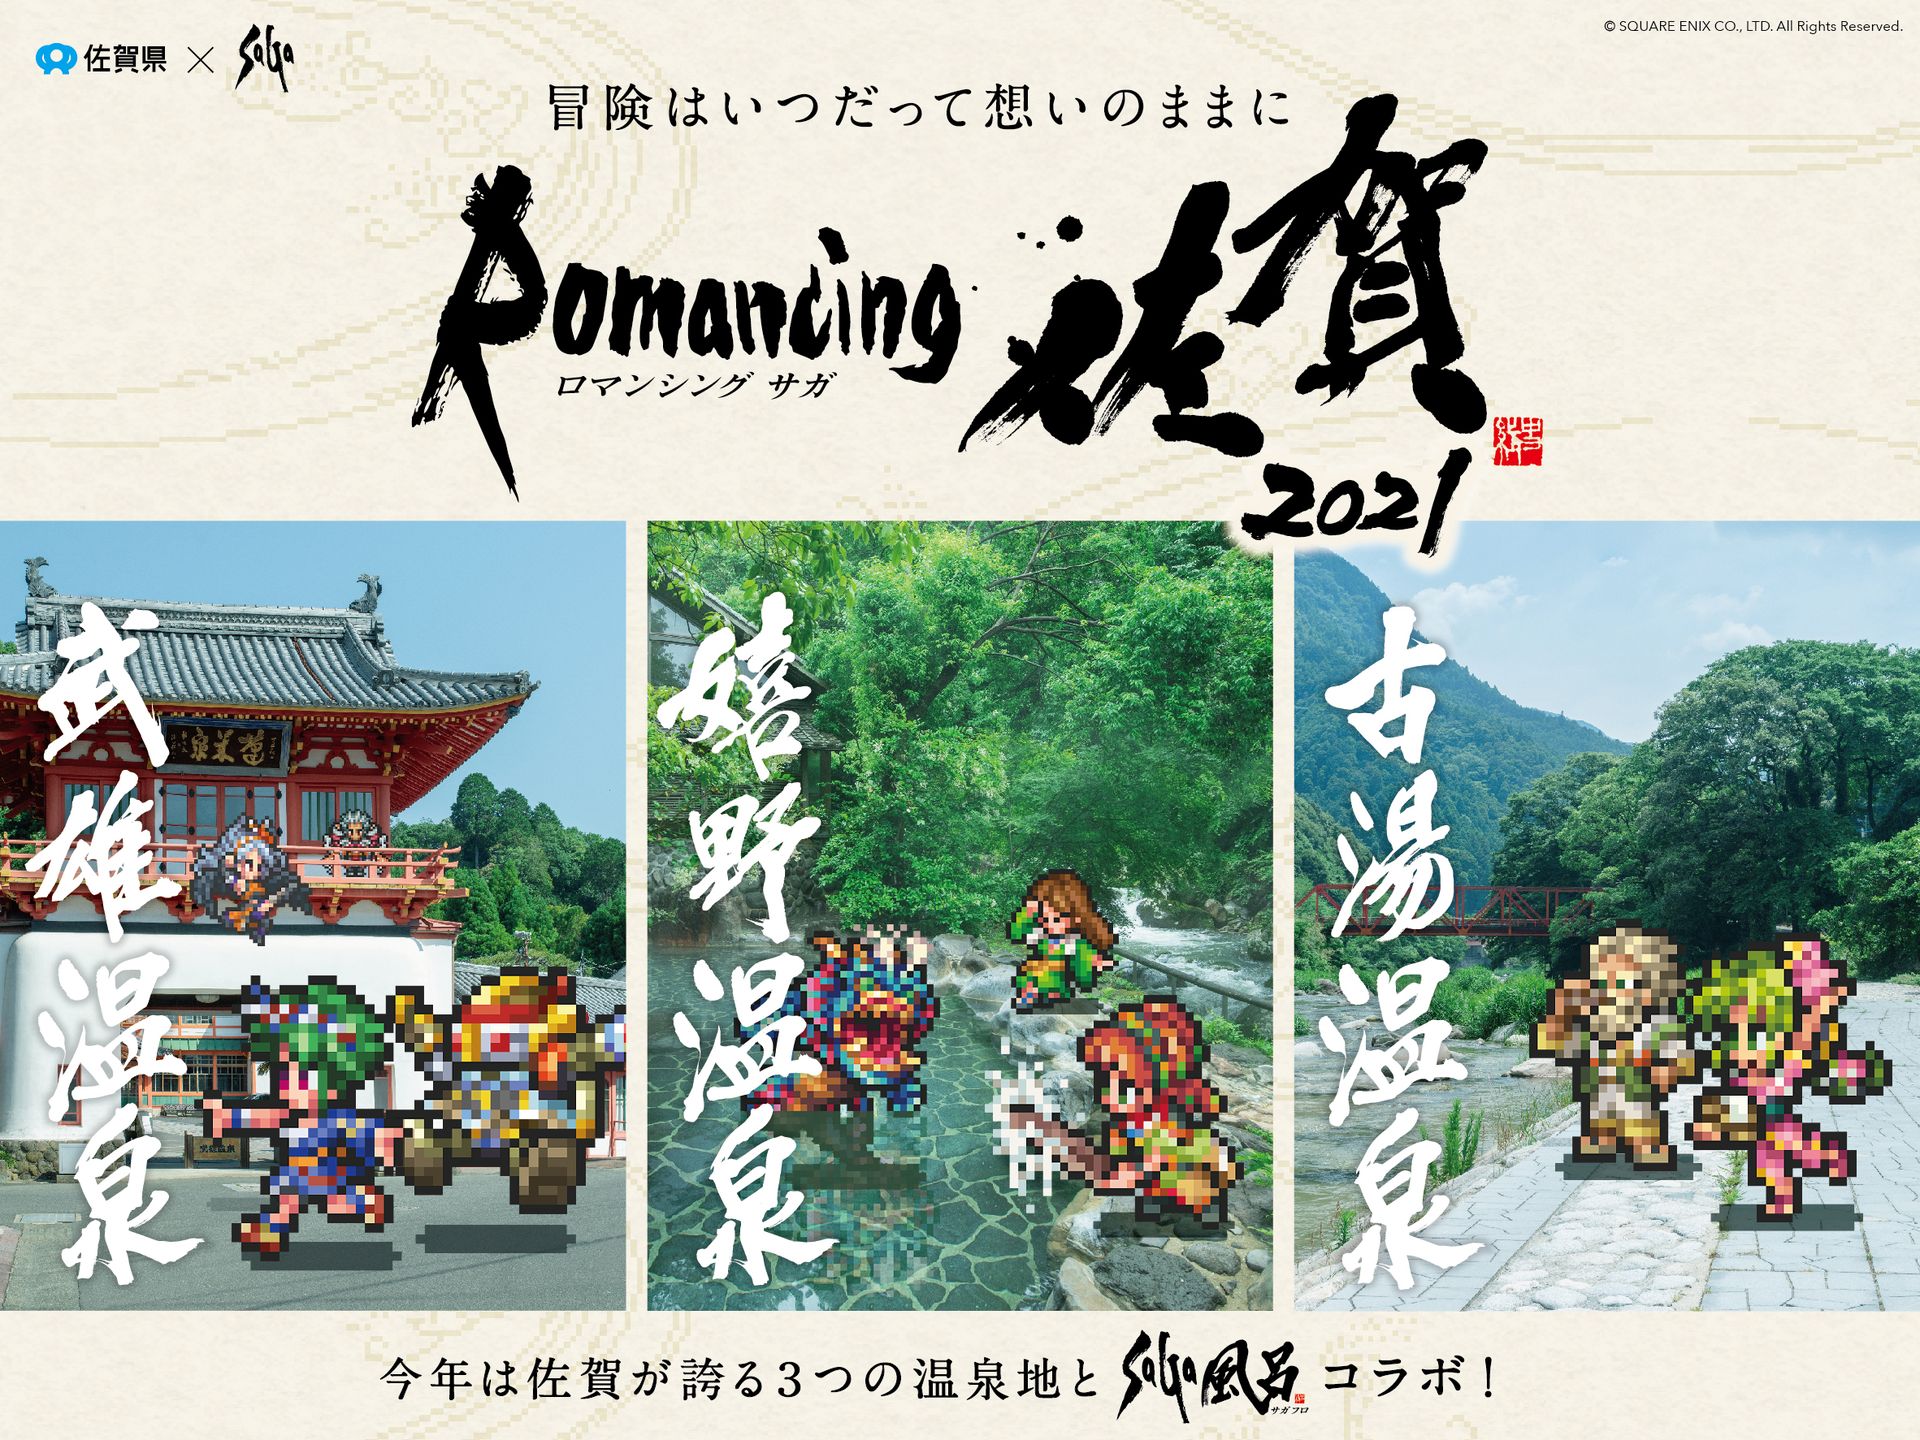 ロマンシング佐賀21 開催決定 佐賀が誇る3つの温泉地で Saga風呂 コラボを展開 Game Watch